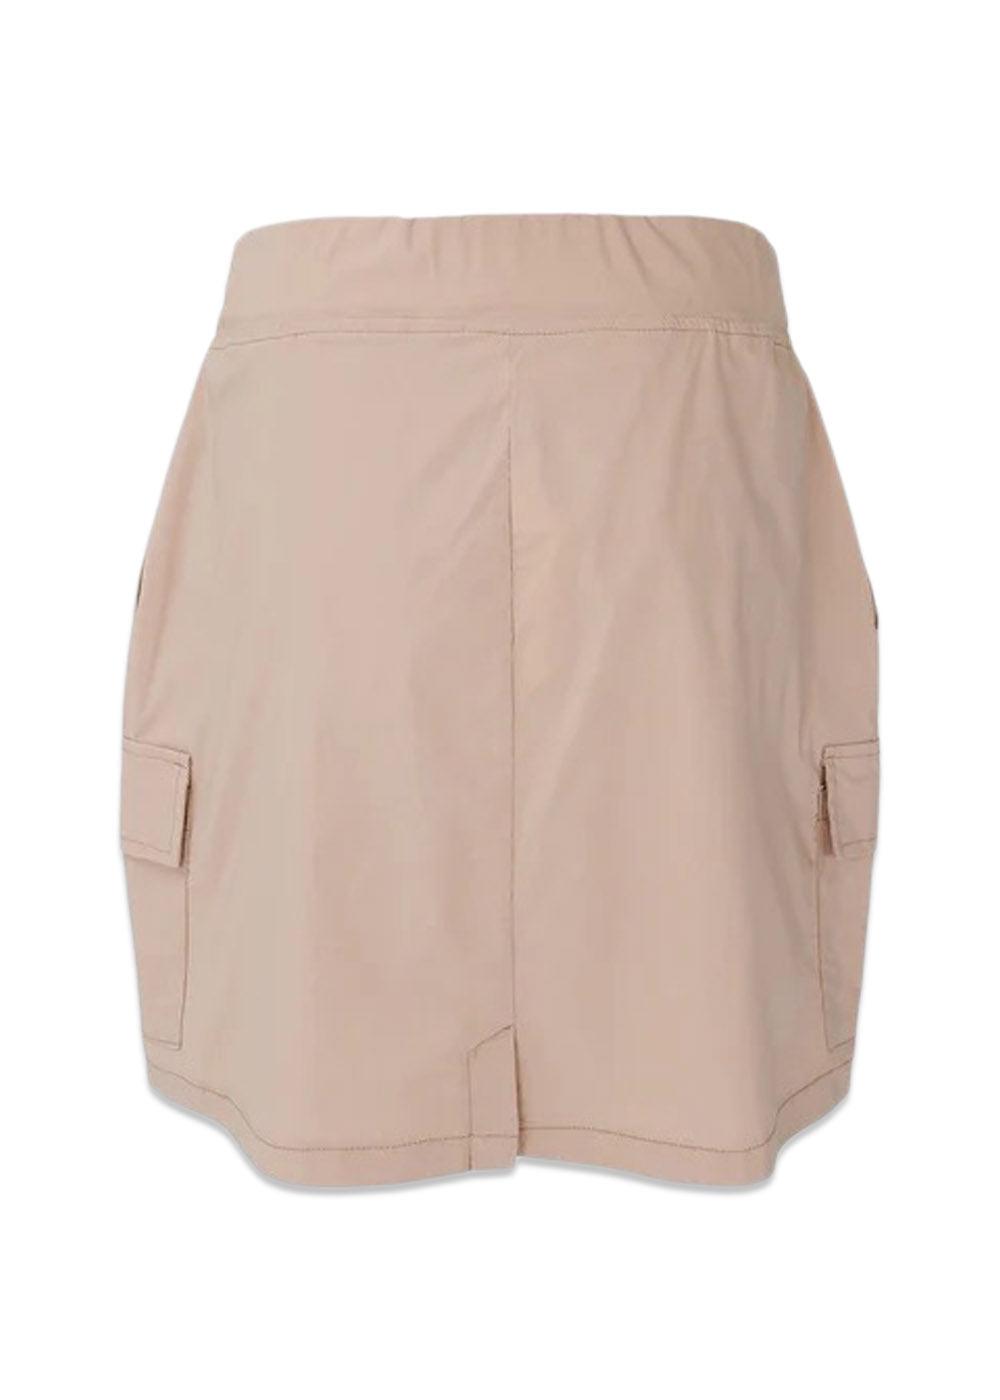 BCDAVINA short cargo skirt - Lt. Sand